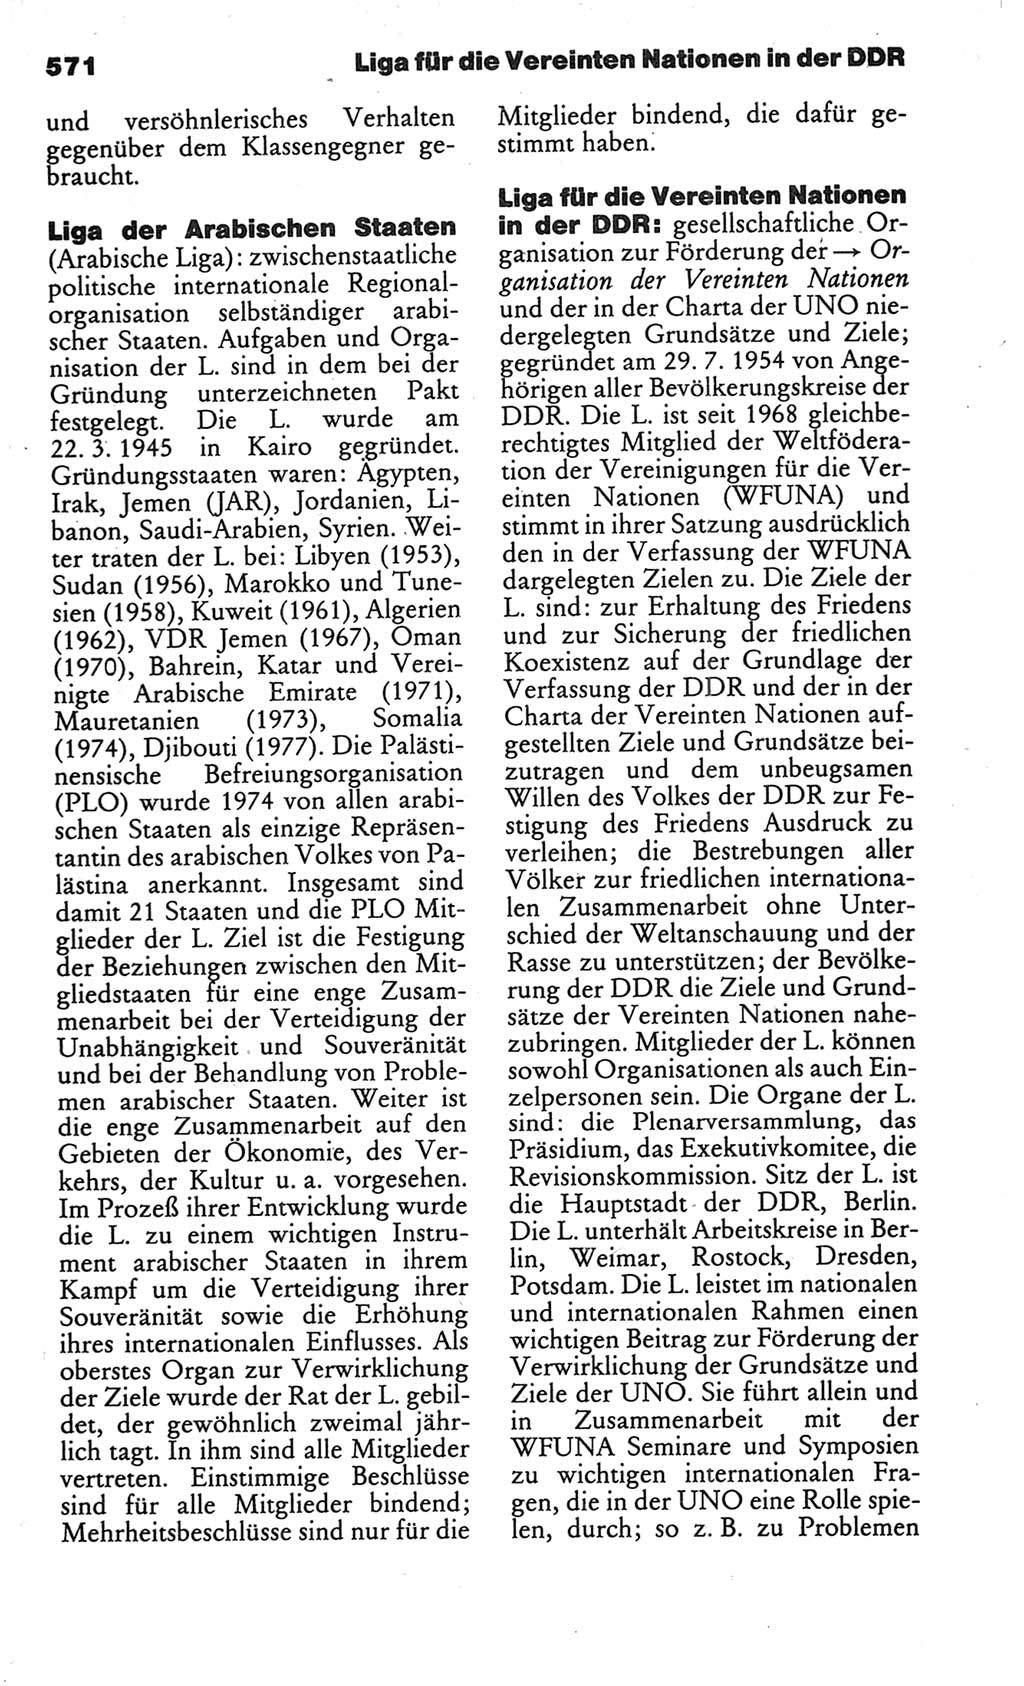 Kleines politisches Wörterbuch [Deutsche Demokratische Republik (DDR)] 1986, Seite 571 (Kl. pol. Wb. DDR 1986, S. 571)